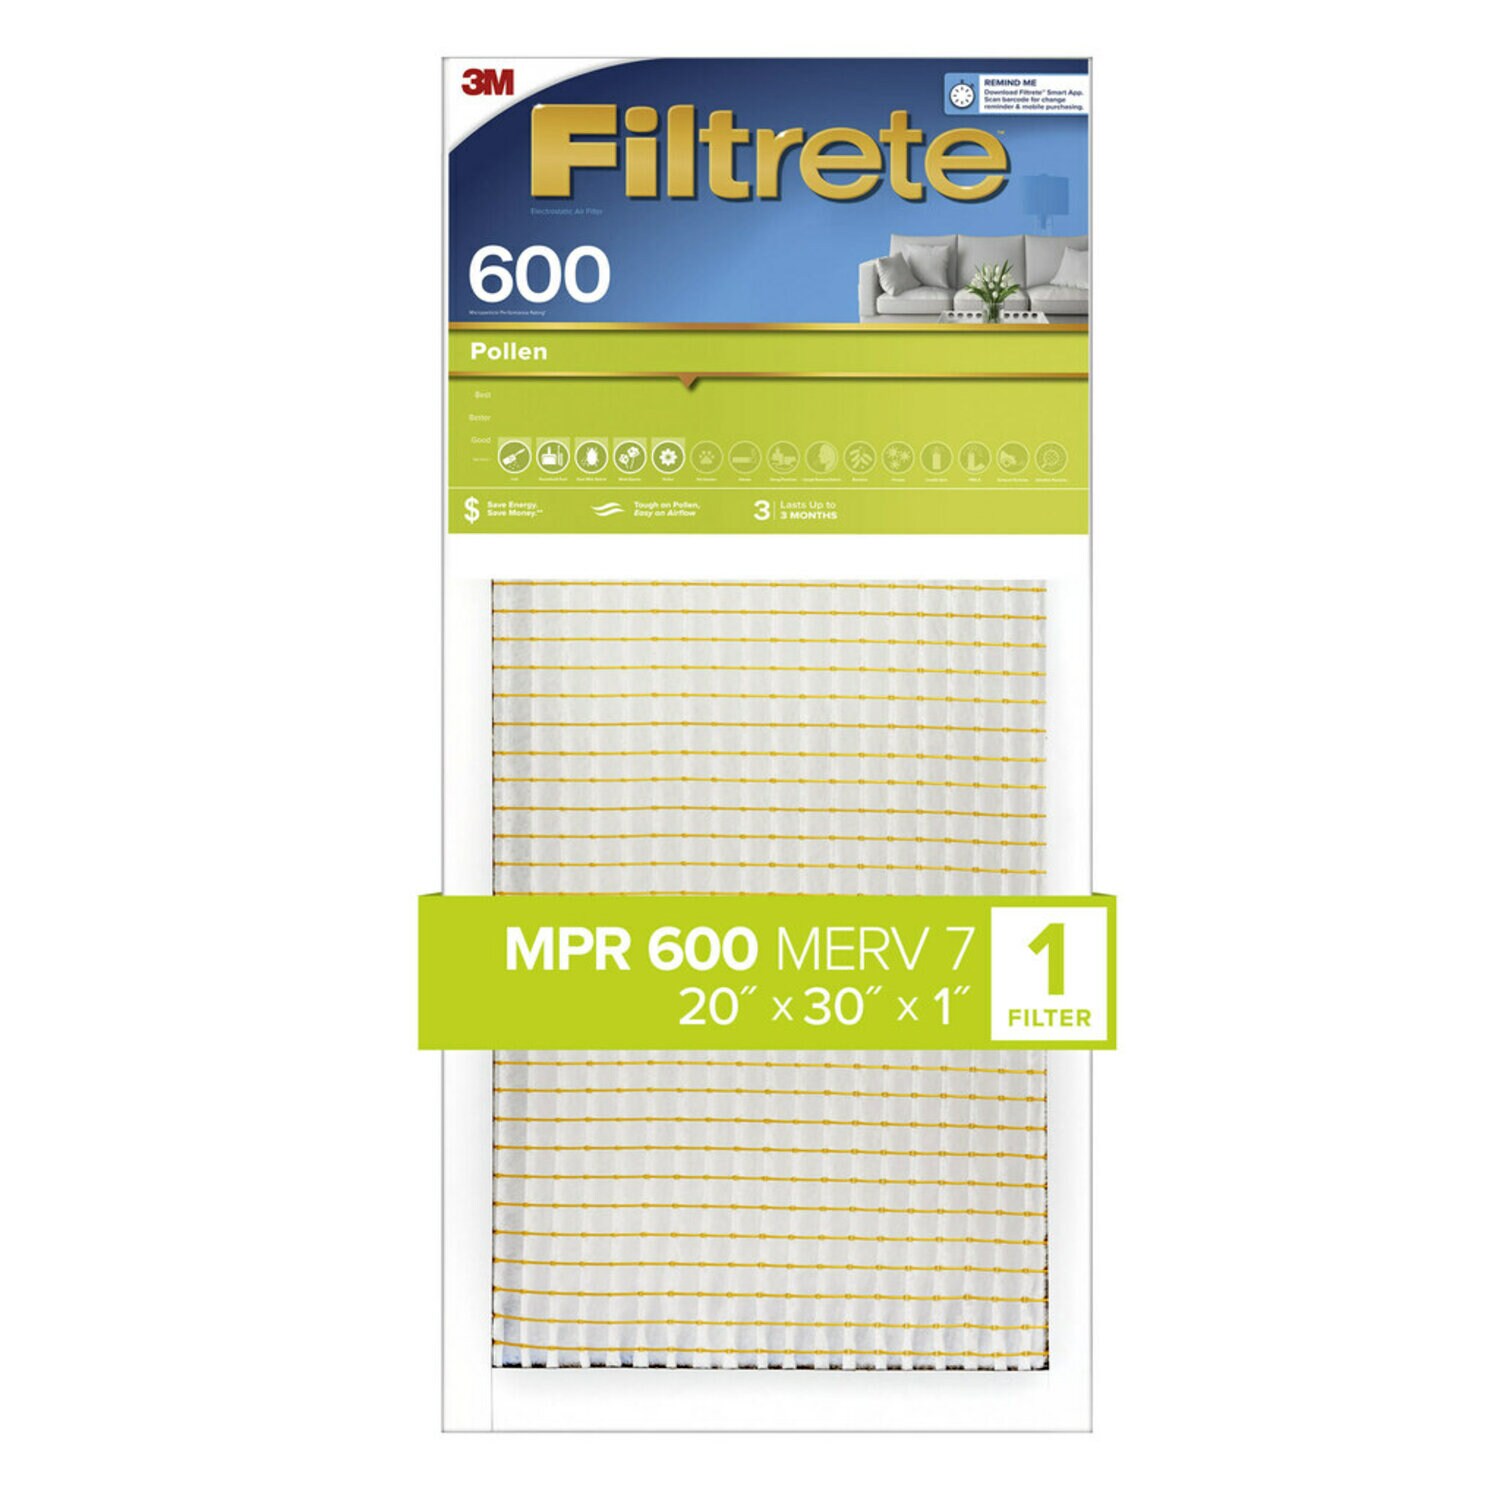 7100187167 - Filtrete Pollen Air Filter, 600 MPR, 9882-4, 20 in x 30 in x 1 in (50,8
cm x 76,2 cm x 2,5 cm)